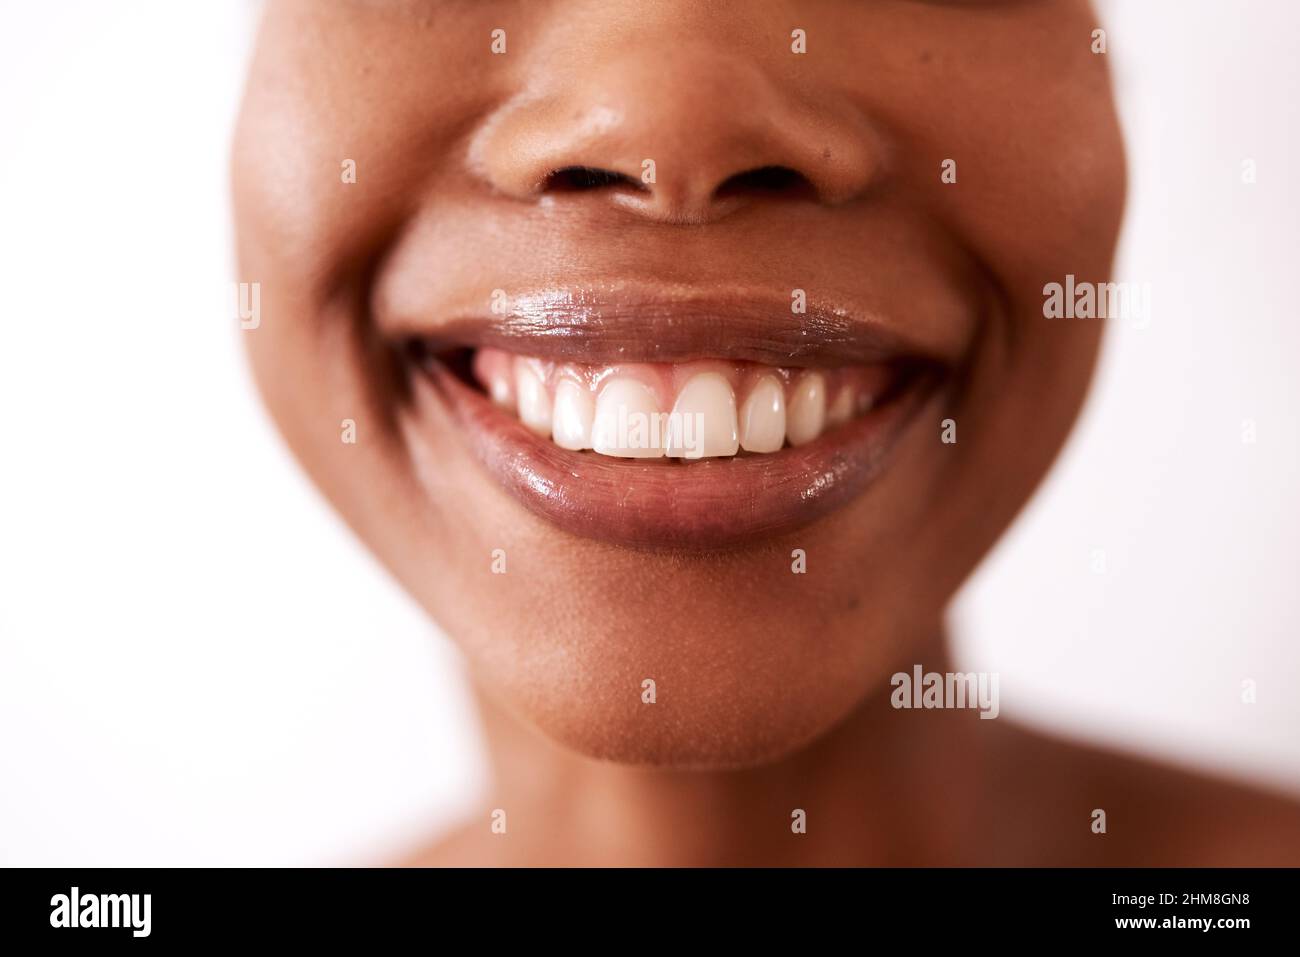 Ein Lächeln kann die Welt verändern. Studioaufnahme einer nicht erkennbaren Frau, die vor weißem Hintergrund lächelt. Stockfoto